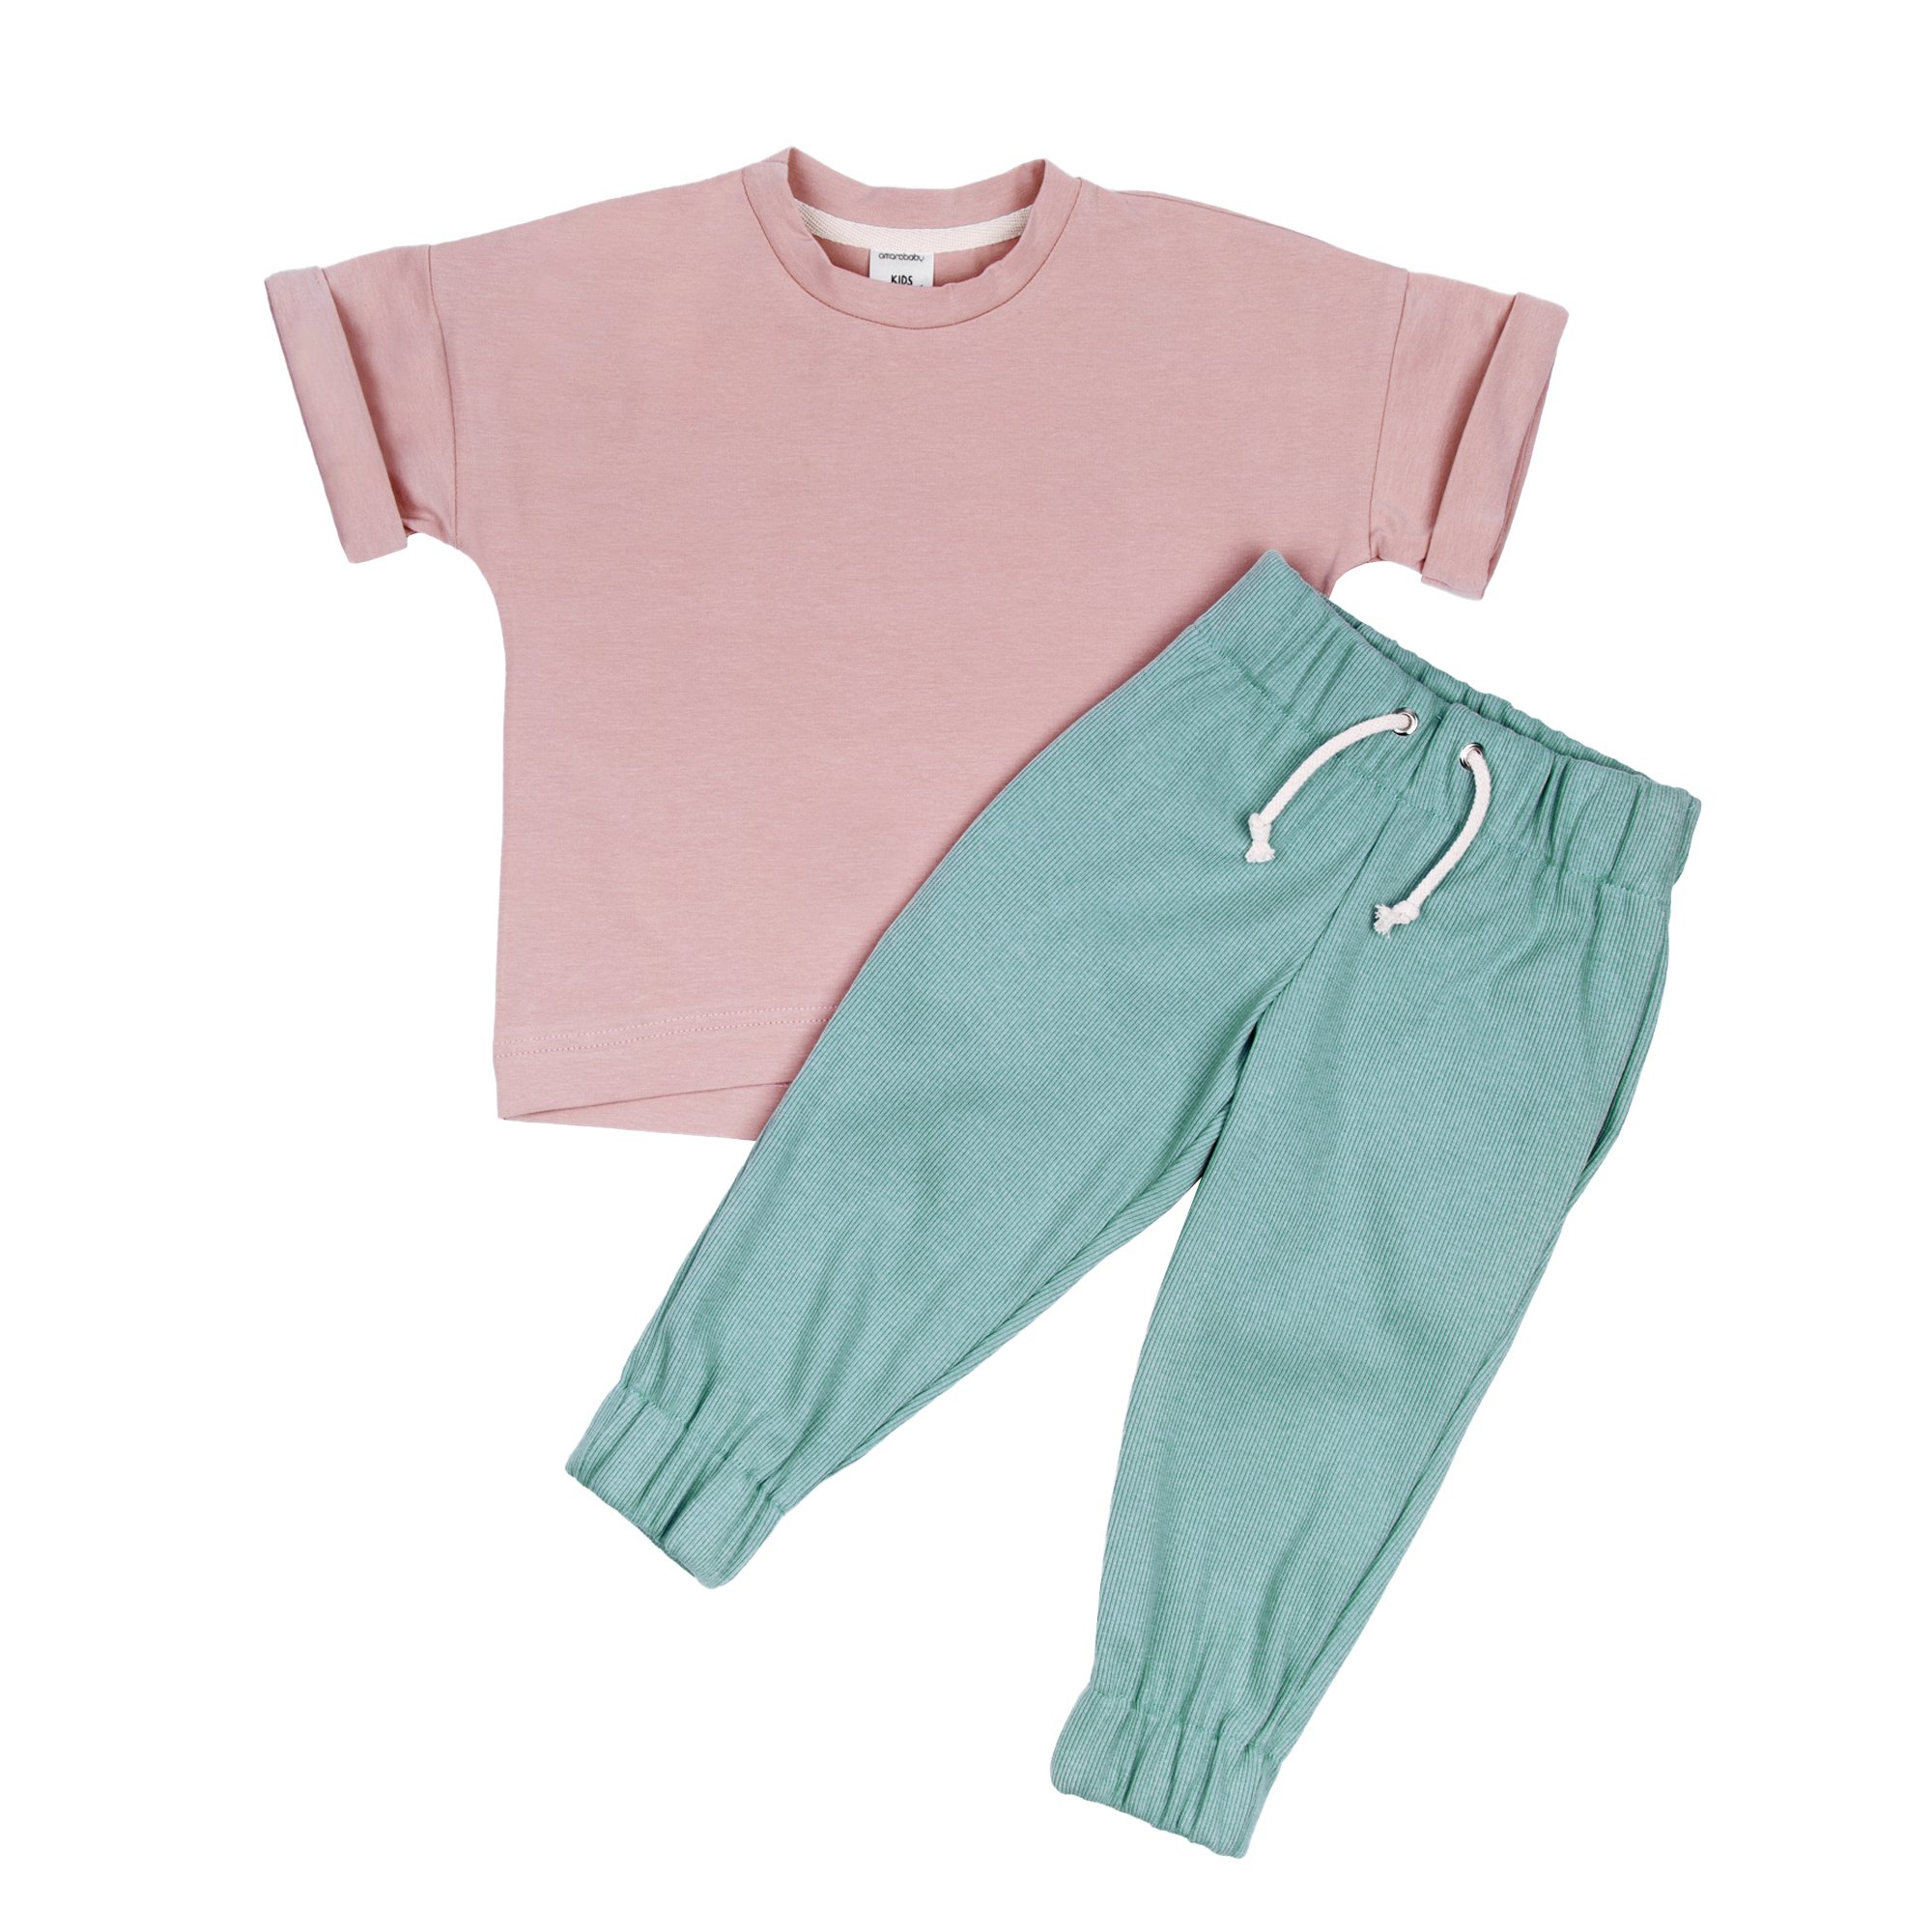 Костюм детский Amarobaby JUMP футболка и брюки, розовый/мятный, р. 86-92